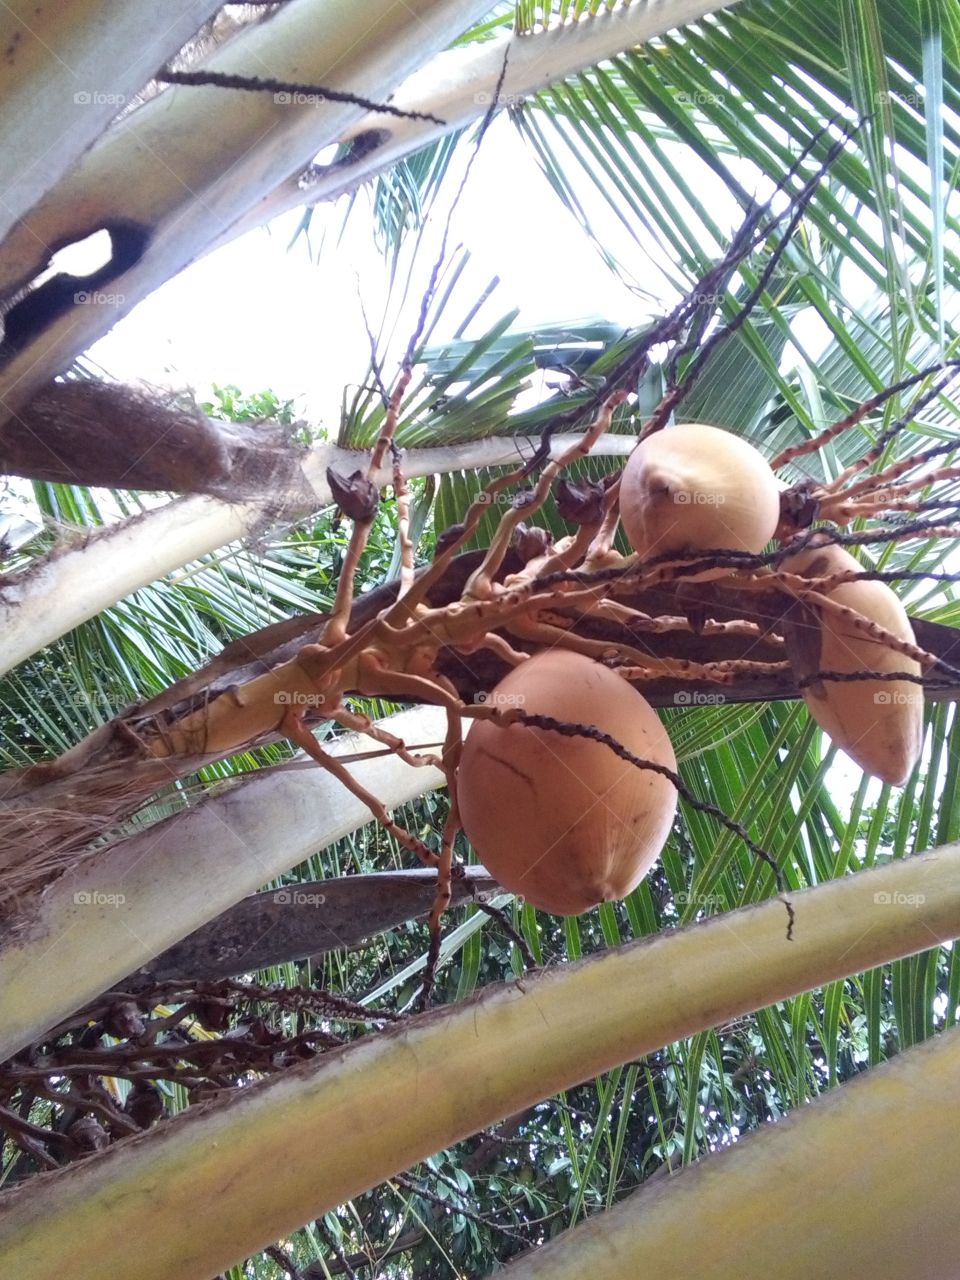 Kingcoconut